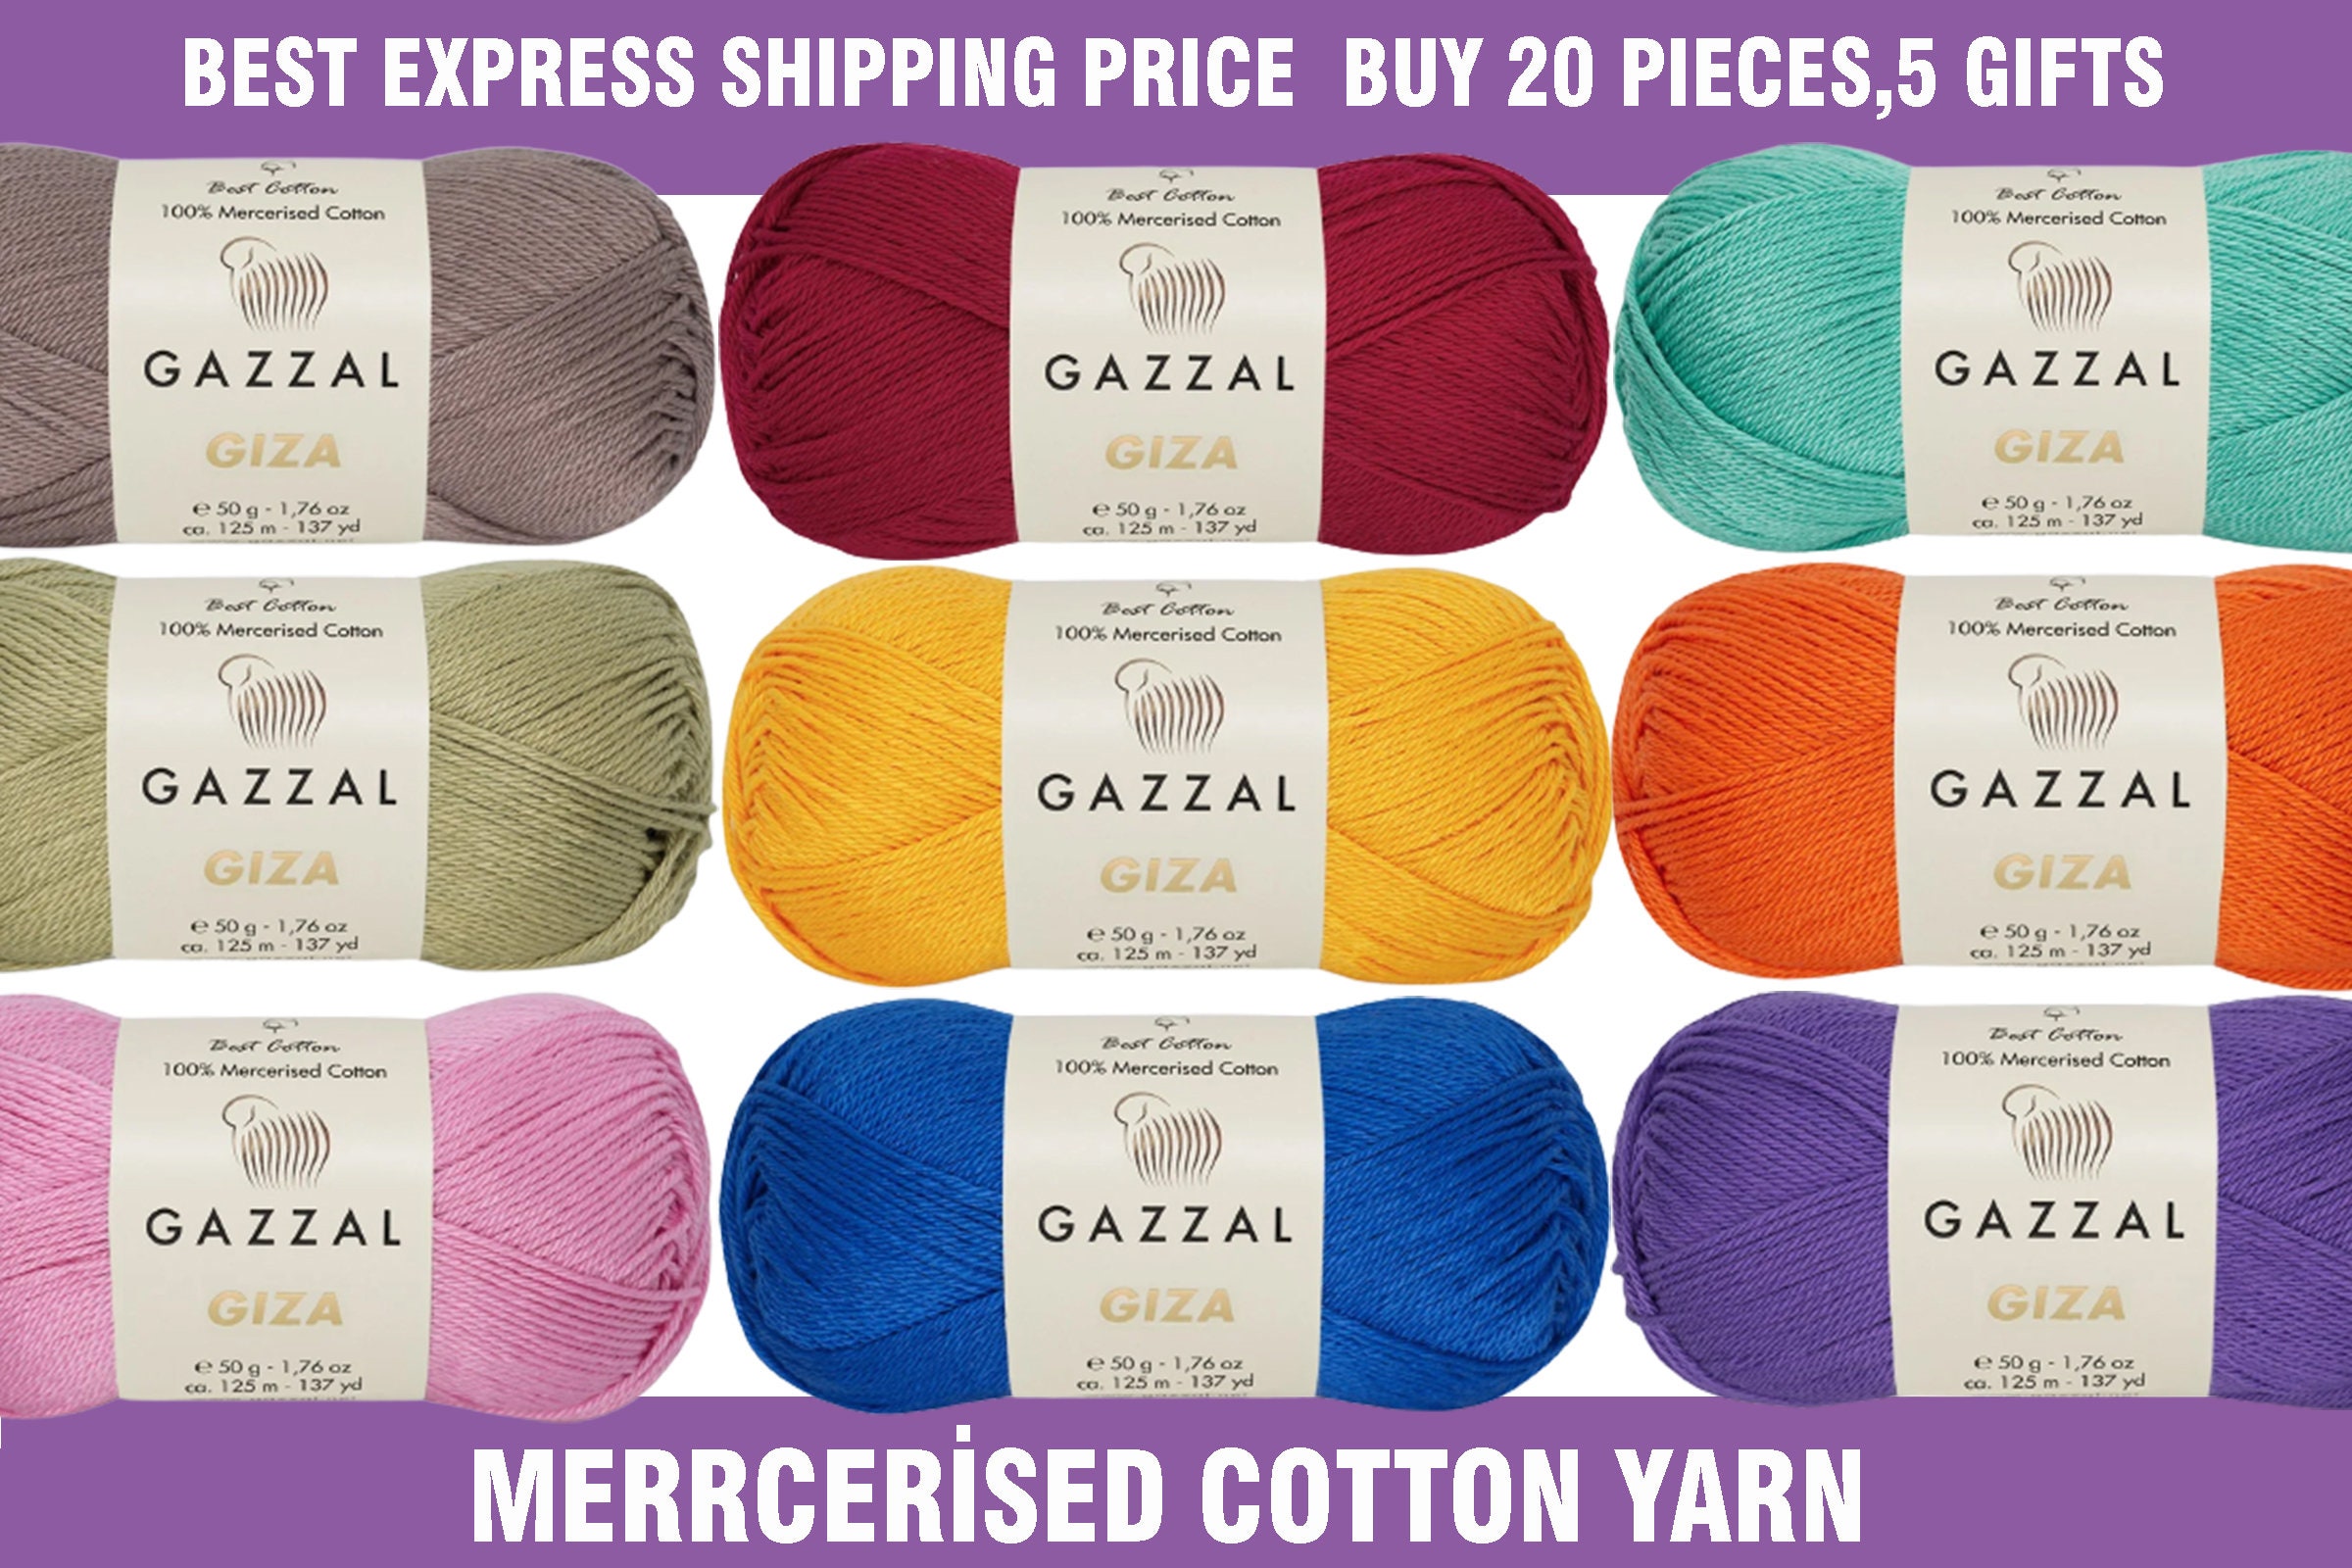 COTTON Yarn Mercerized Cotton Yarn, Soft Cotton Yarn, Knitting Yarn Crochet  Yarn Sportweight Weaving Yarn, Amigurumi Hilaza 